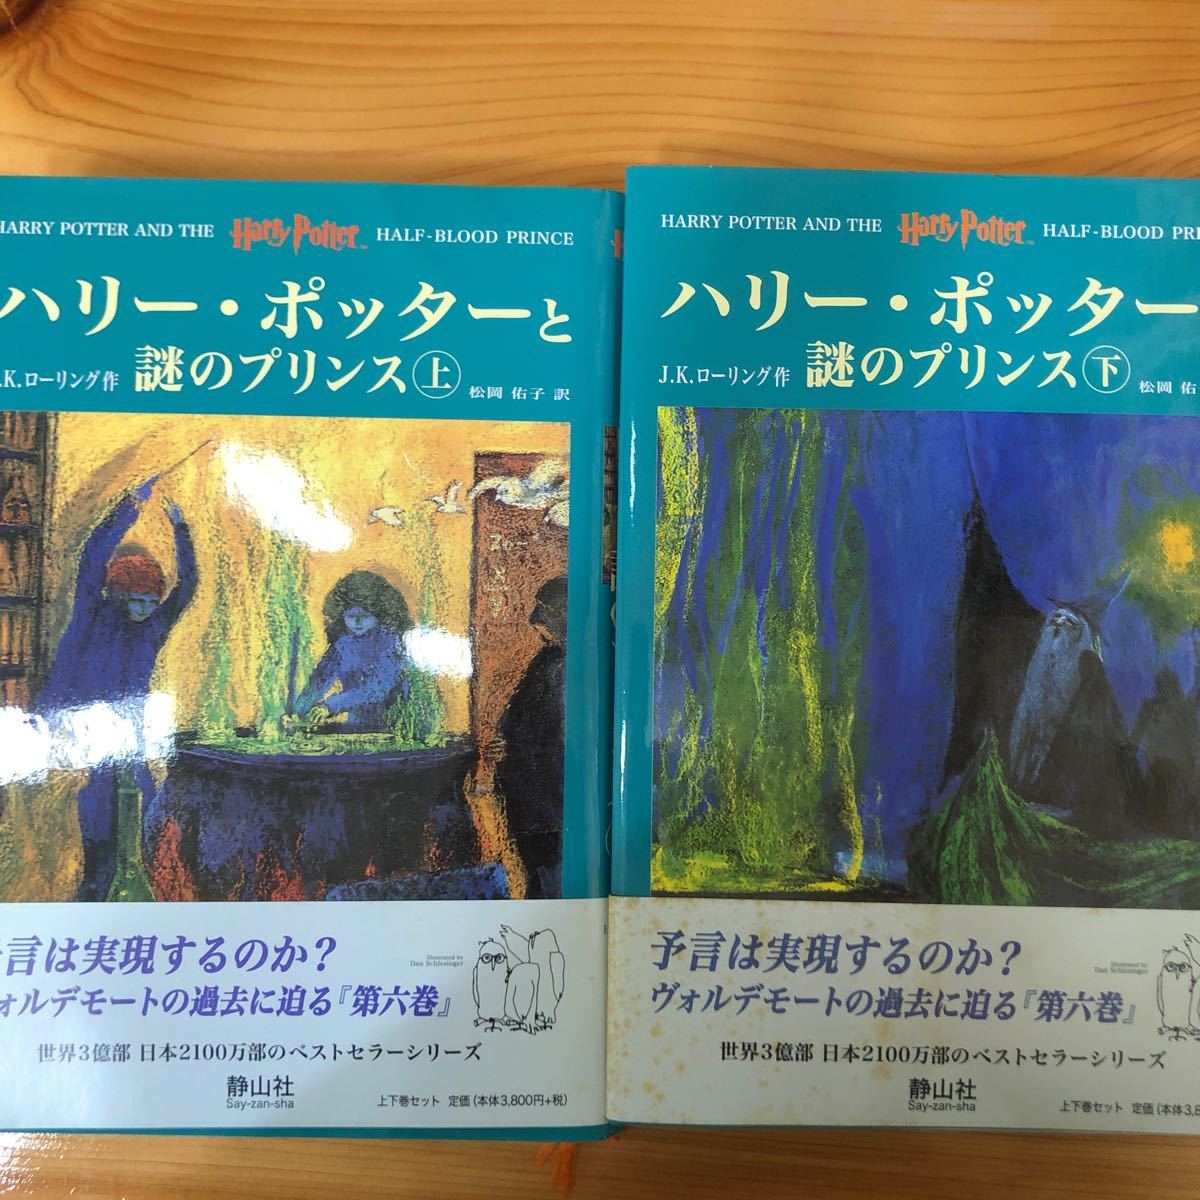 ハリーポッターと謎のプリンス ハリーポッターシリーズ第六巻 上下巻2冊セット (6)